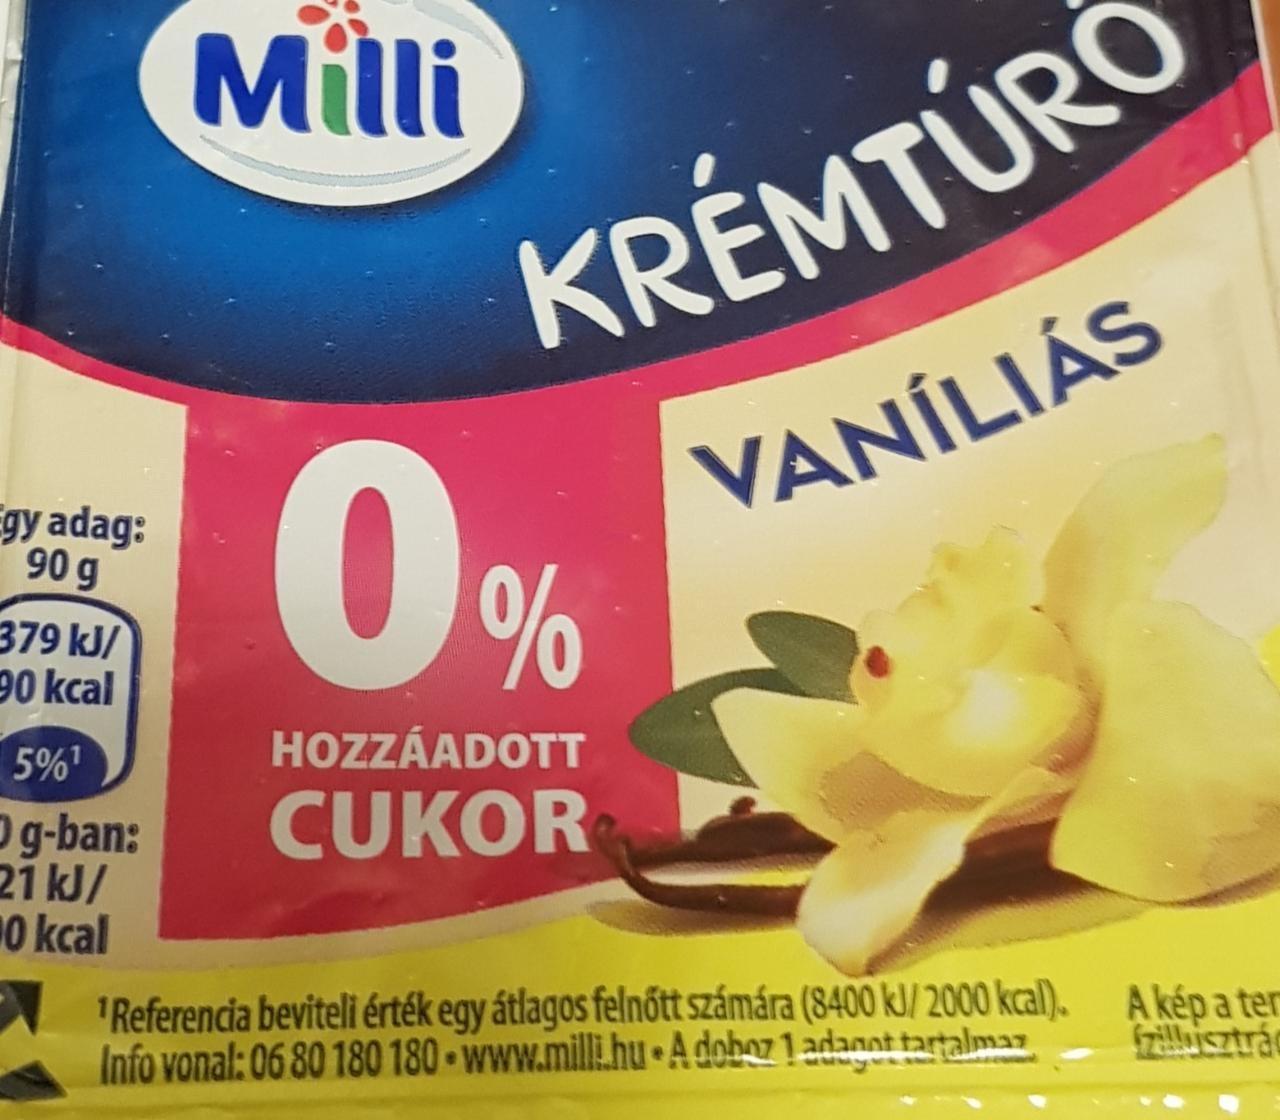 Fotografie - Milli krémtúró vaníliás 0% hozzáadott cukor